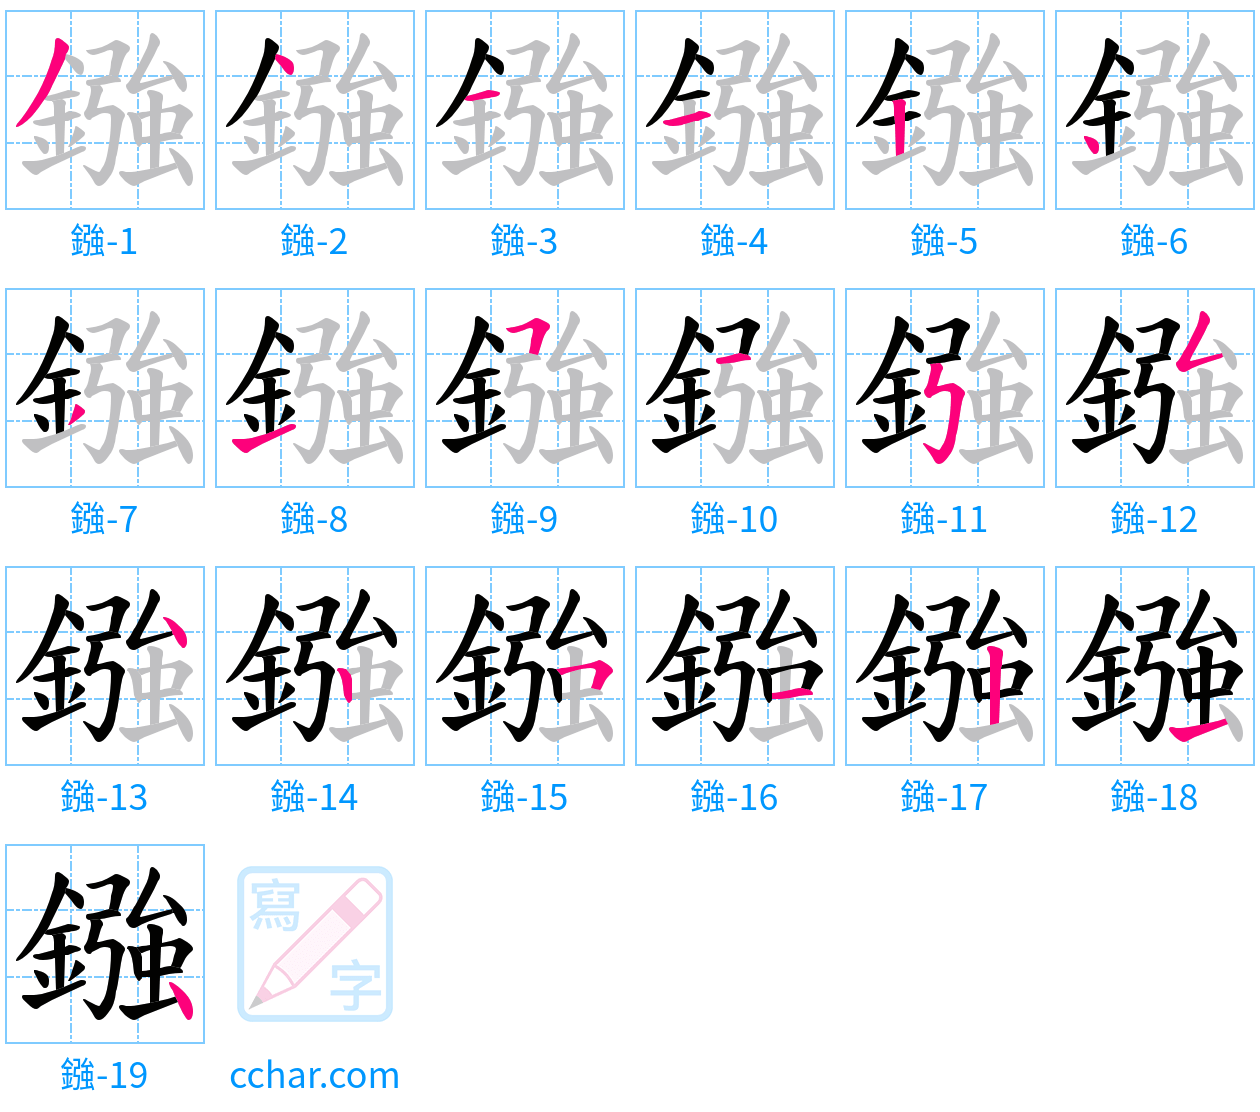 鏹 stroke order step-by-step diagram